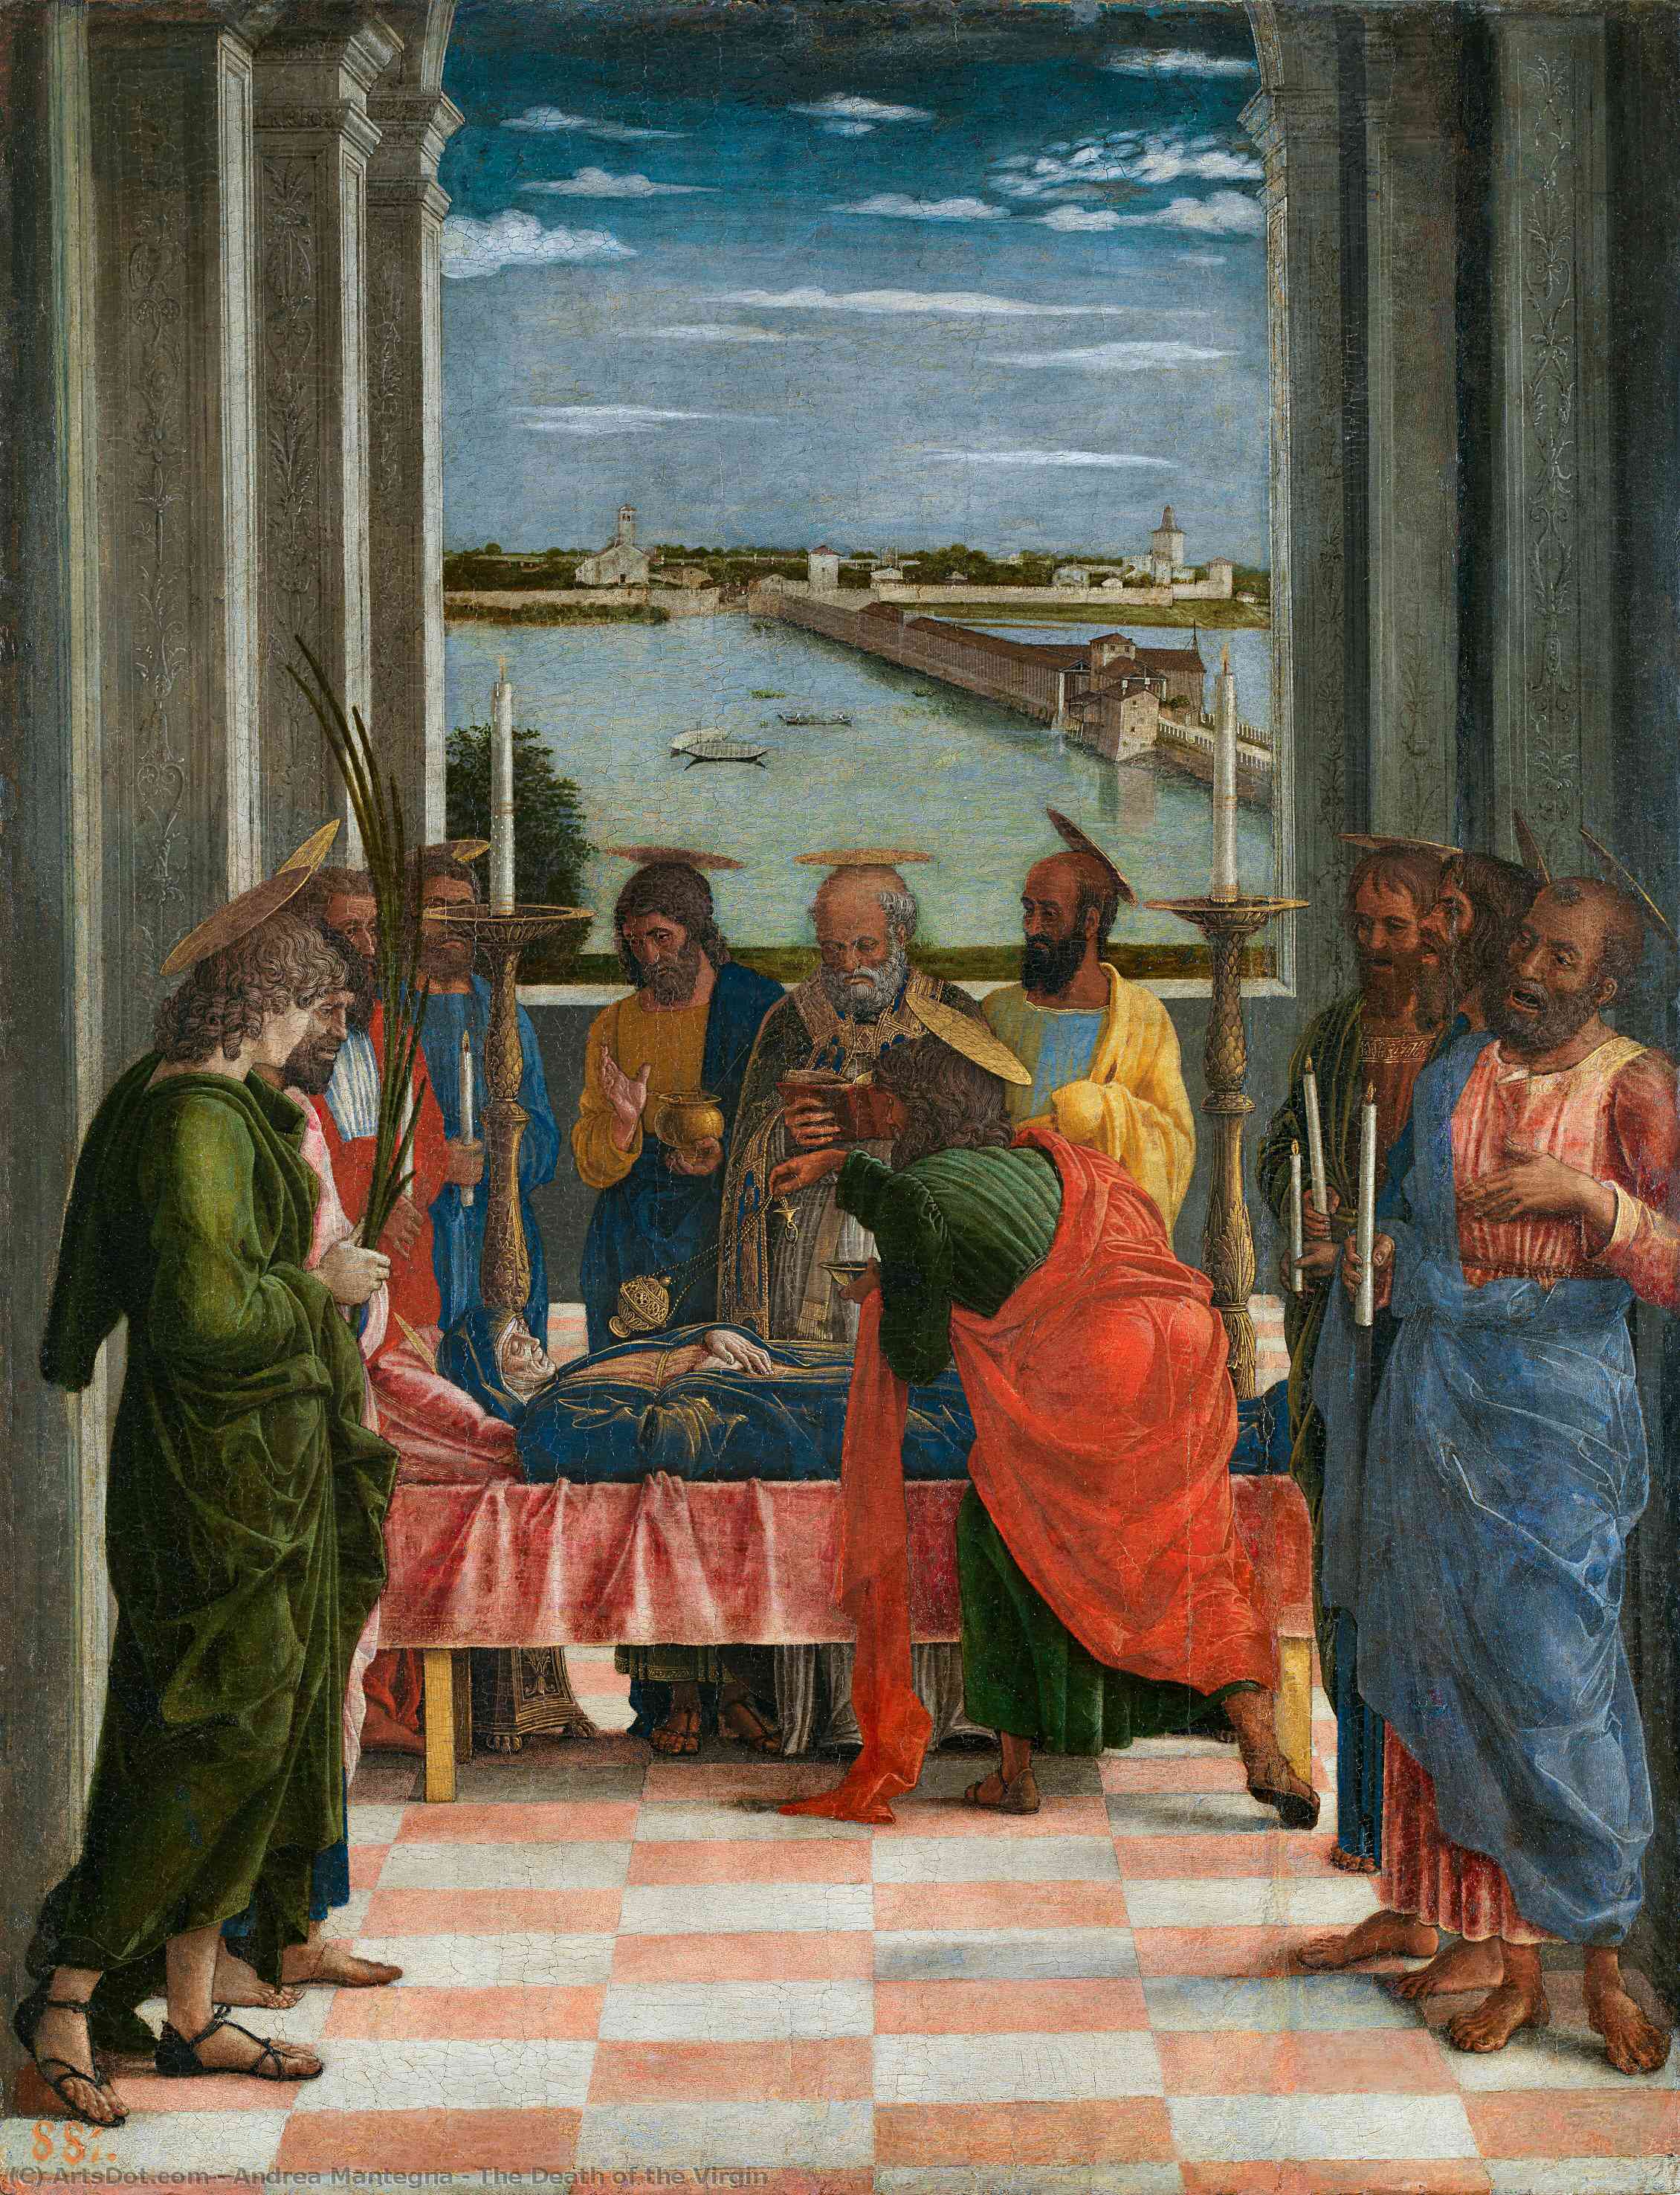 Acheter Reproductions D'art De Musée La mort de la Vierge, 1460 de Andrea Mantegna (1431-1506, Italy) | ArtsDot.com